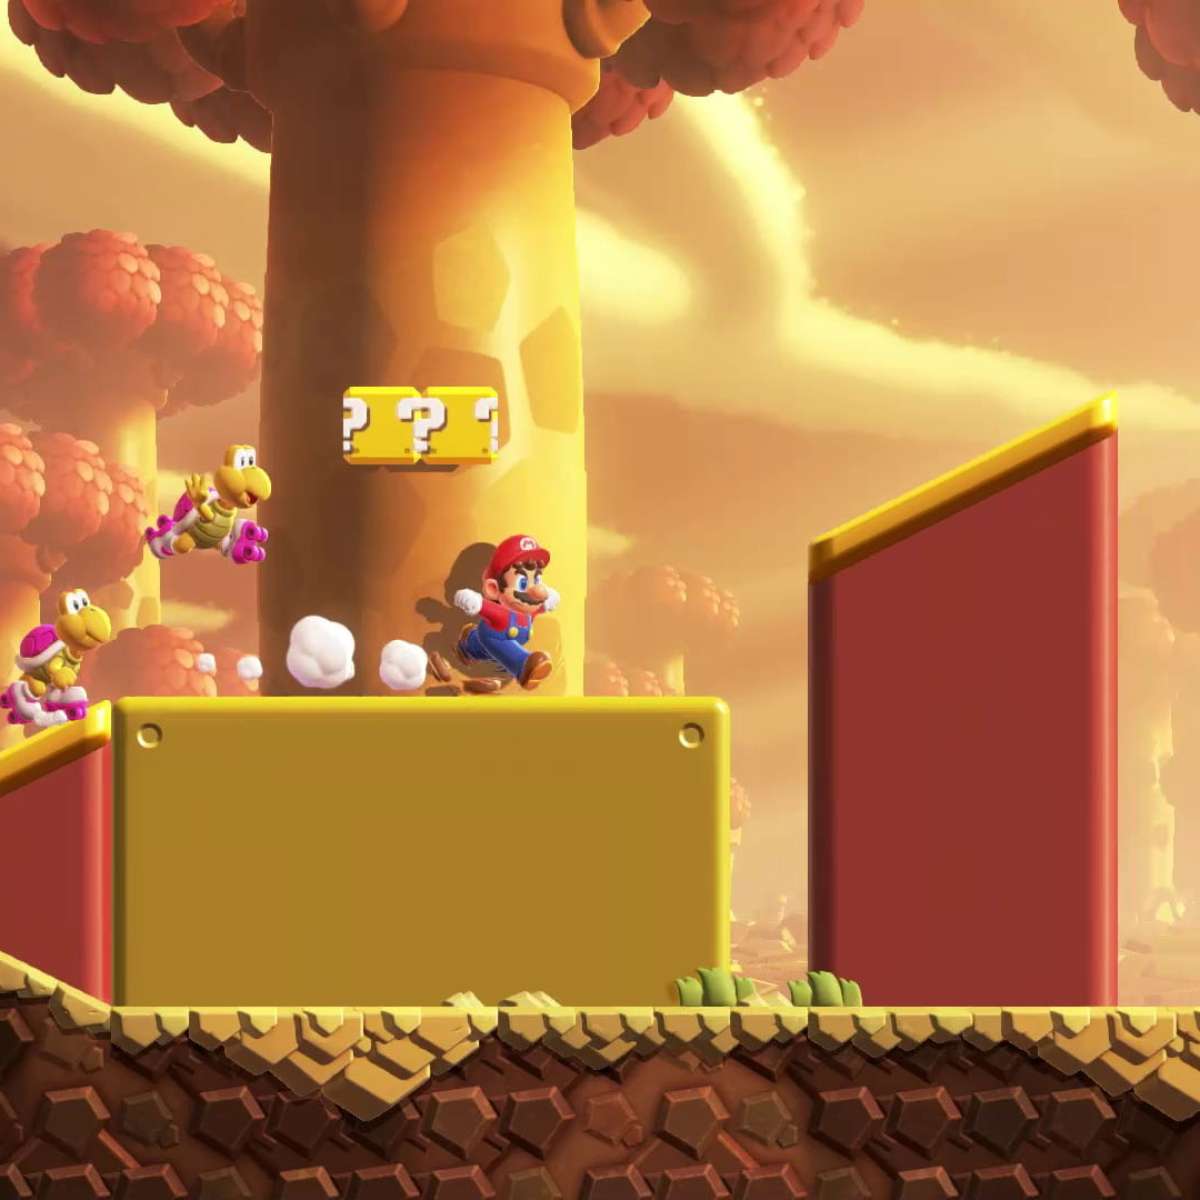 Game Design: Análise do Jogo Super Mario Bros